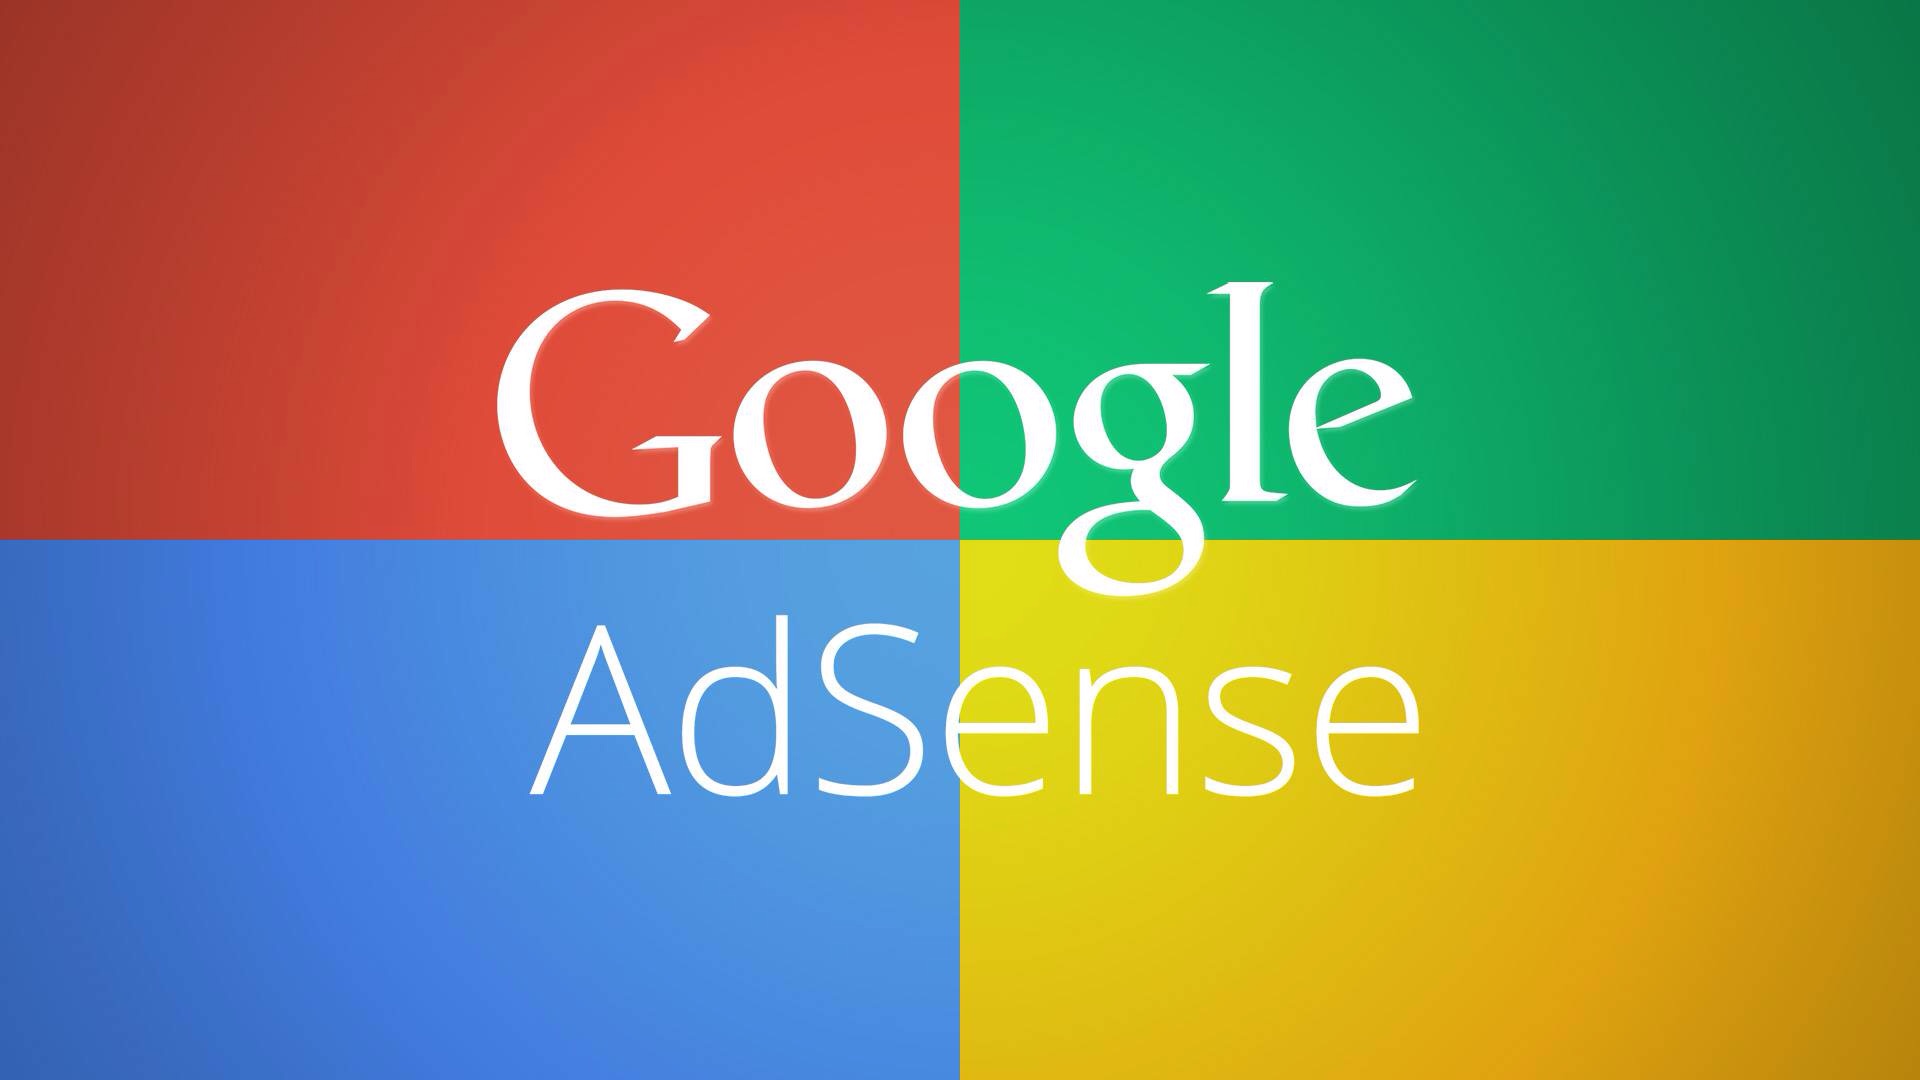 Google AdSense переходит на аукцион первой цены, чтобы упростить покупку рекламных мест через платформу